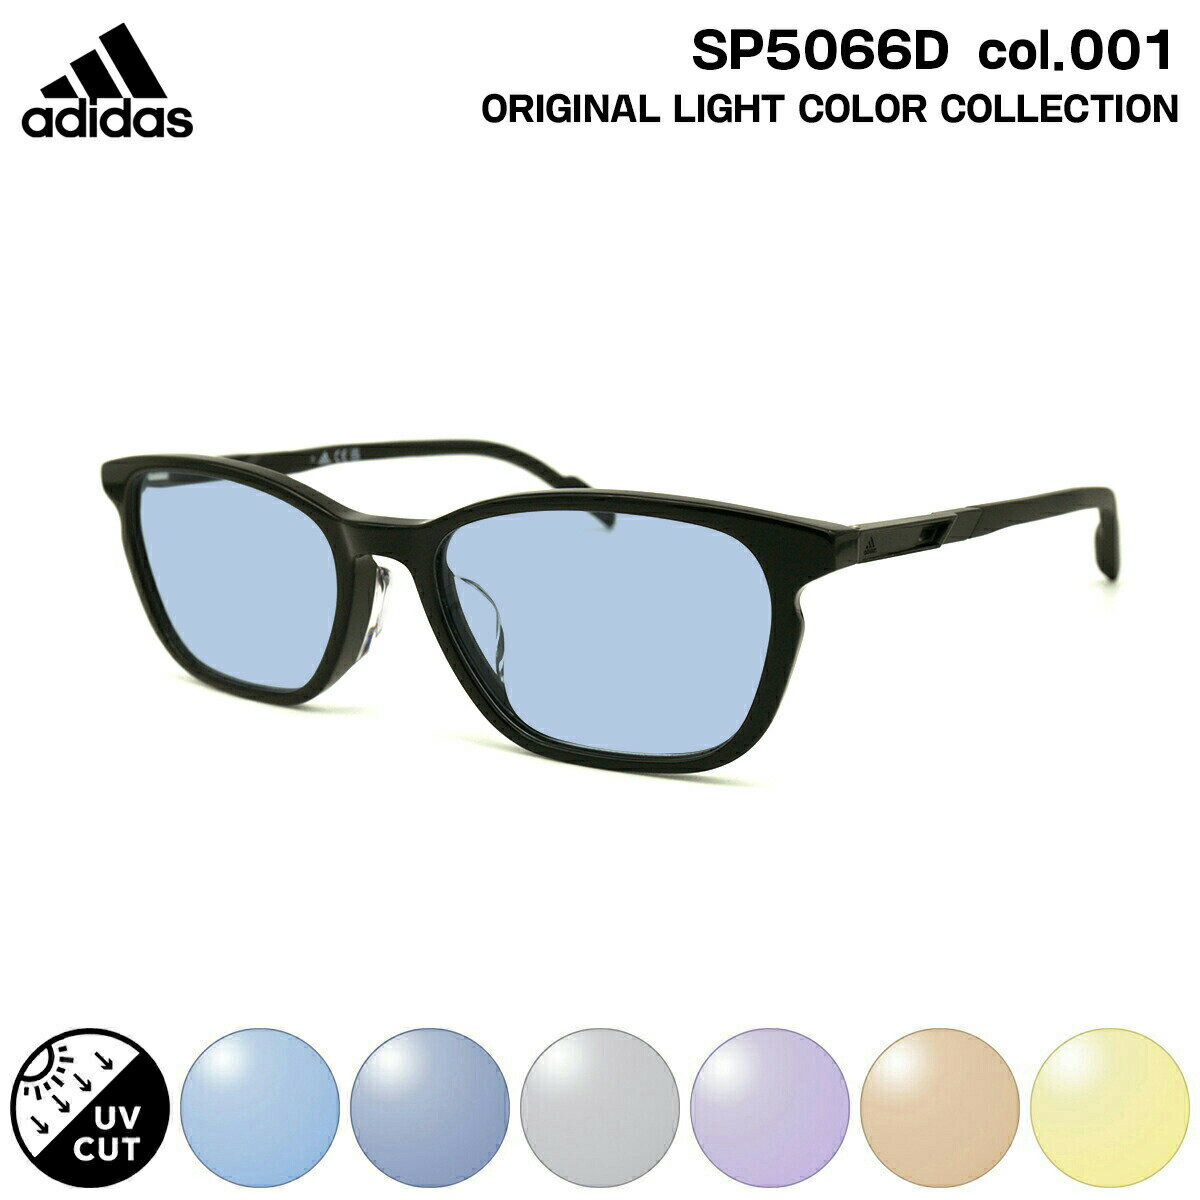 アディダス アディダス サングラス ライトカラー SP5066D (SP5066D/V) col.001 54mm adidas アジアンフィット 国内正規品 UVカット メンズ レディース